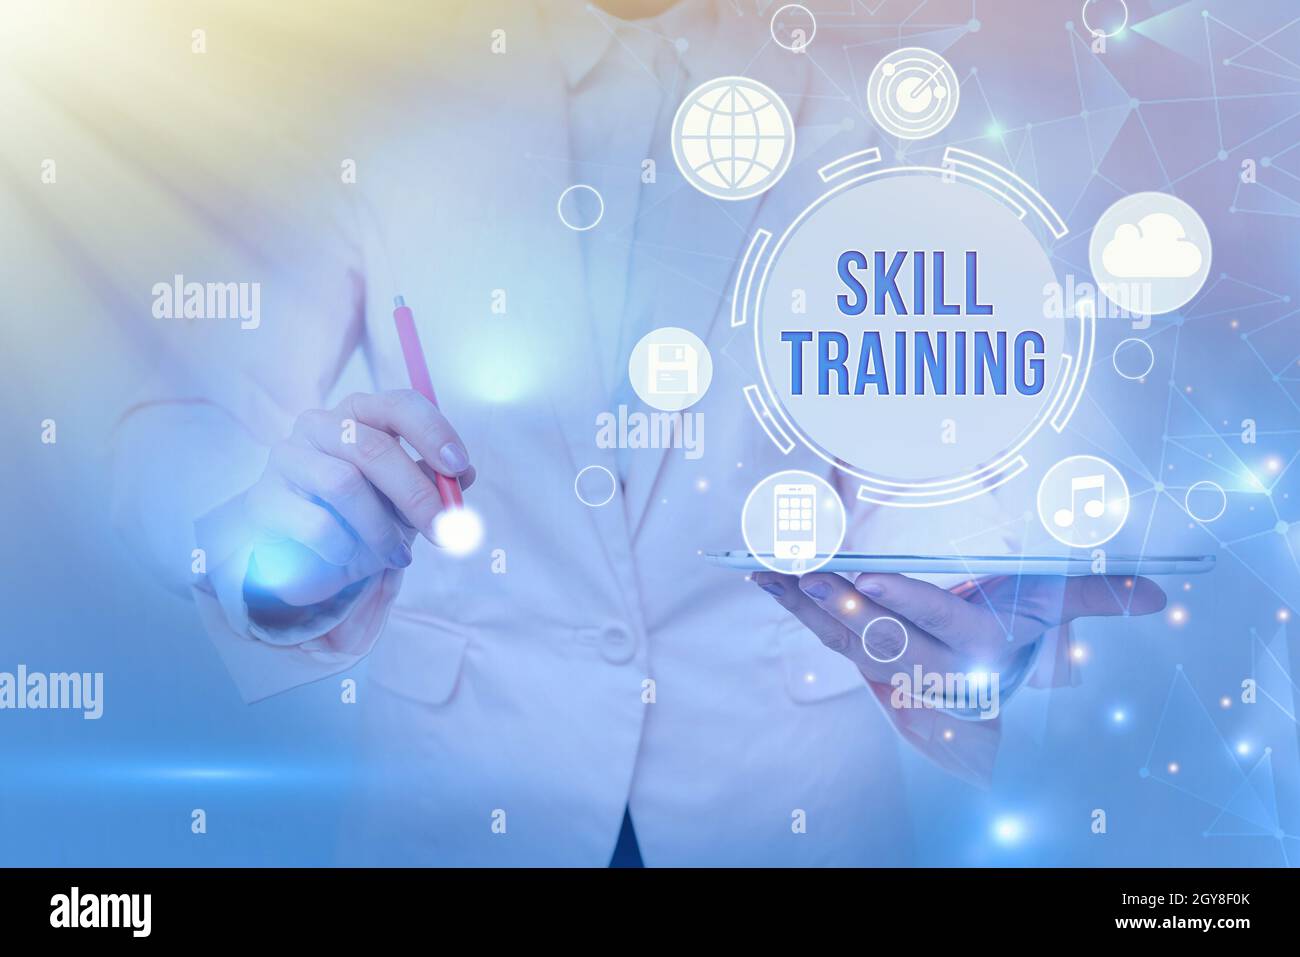 Handschrift Text Skill Training, Business Konzept entwickelt, um das Wissen zu gewinnen und zu verbessern, das ein Mitarbeiter braucht Business Woman Touching Futuristic Virt Stockfoto